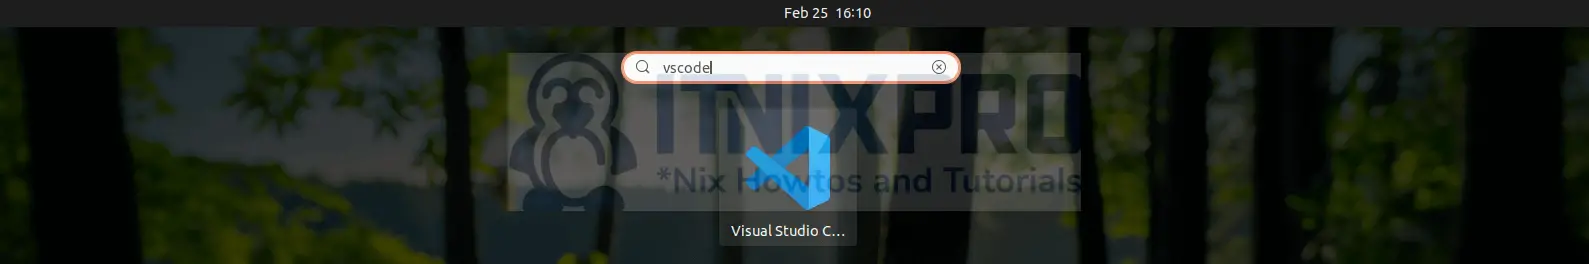 Install VS Code Editor on Ubuntu 22.04